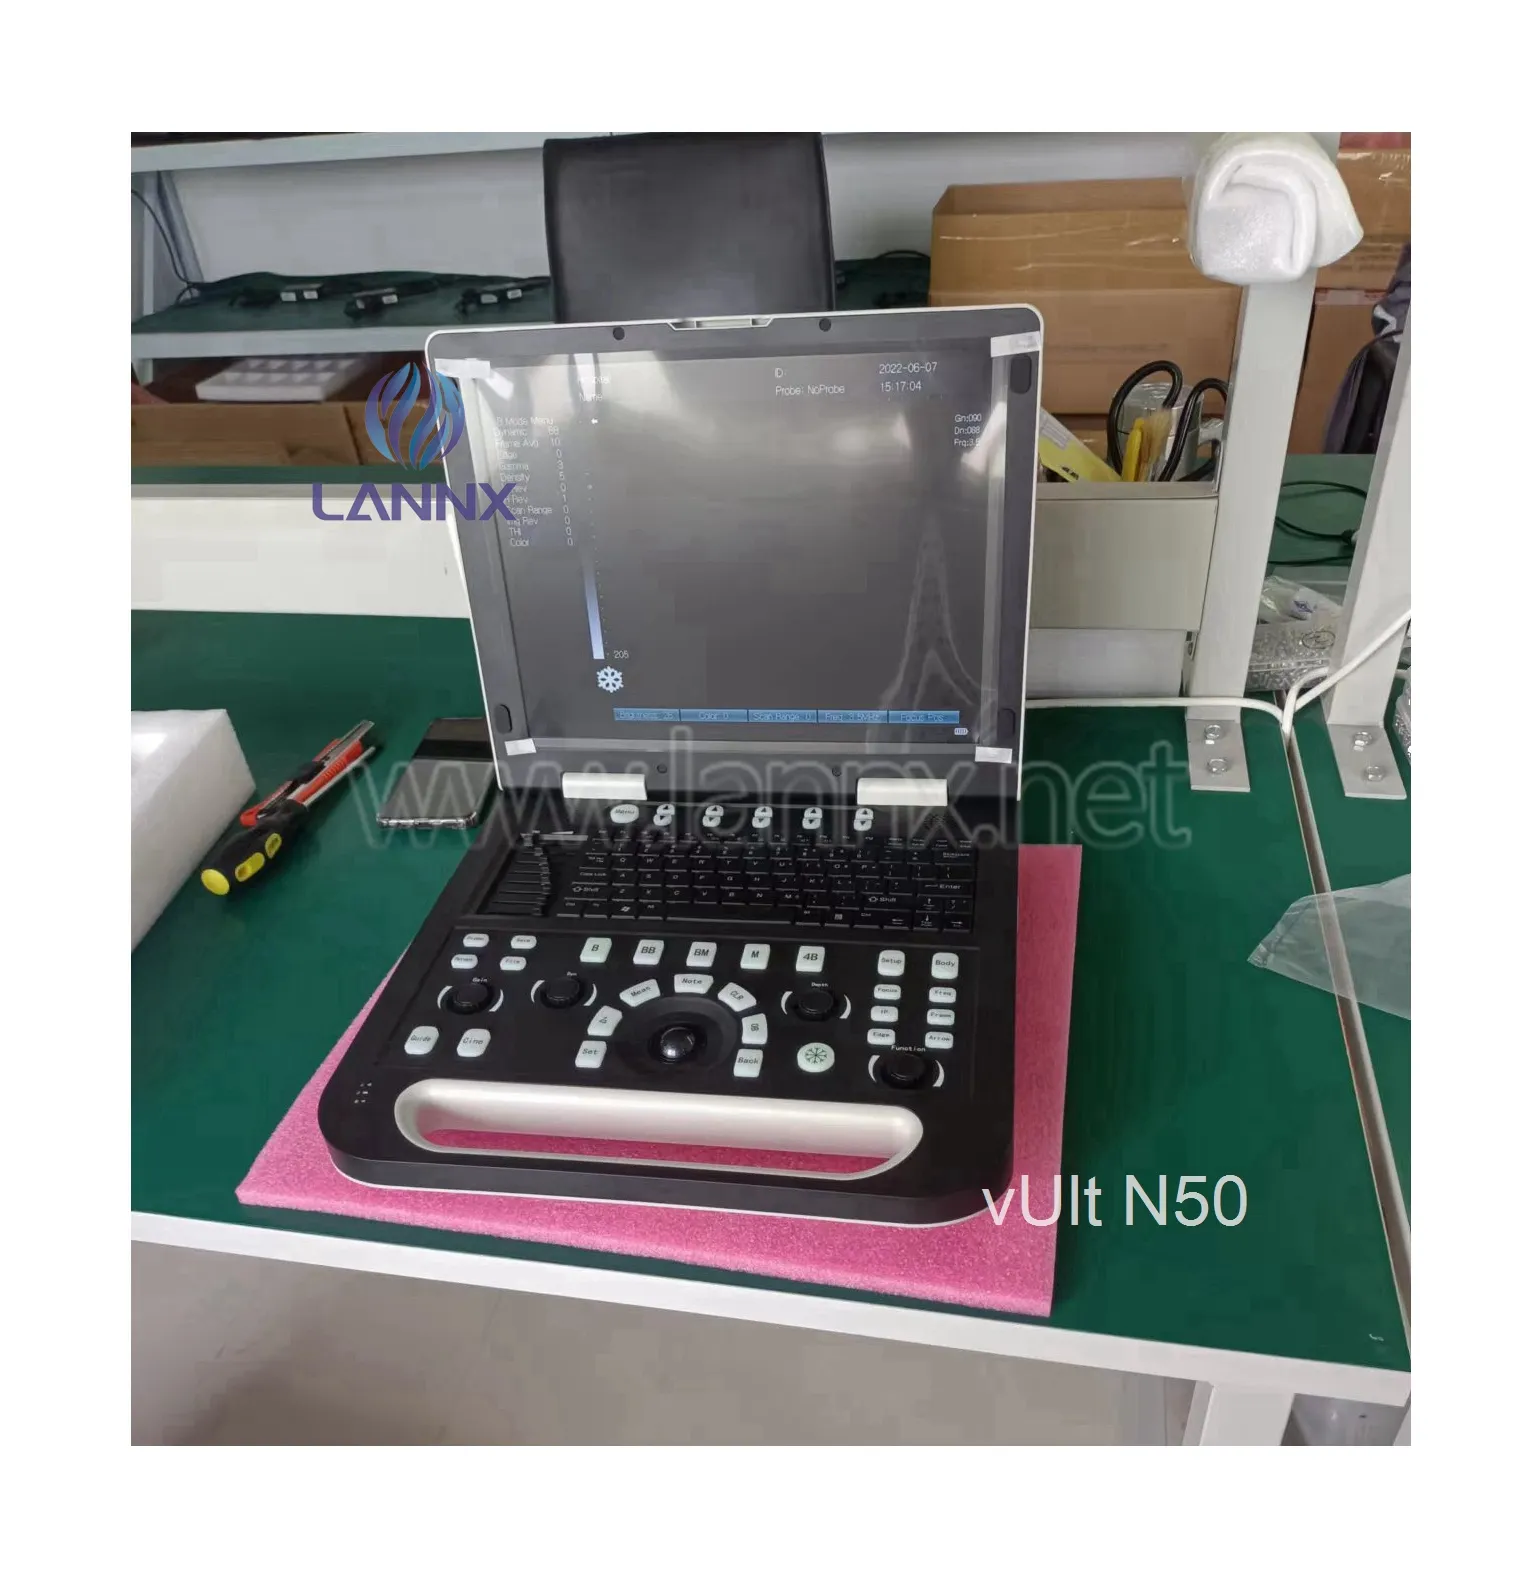 LANNX vUlt N50 Animal Ecografo Portatil Pregnancy Vet Ultrasound Sonar Scanners Pet Medical Diagnostic Portable usg